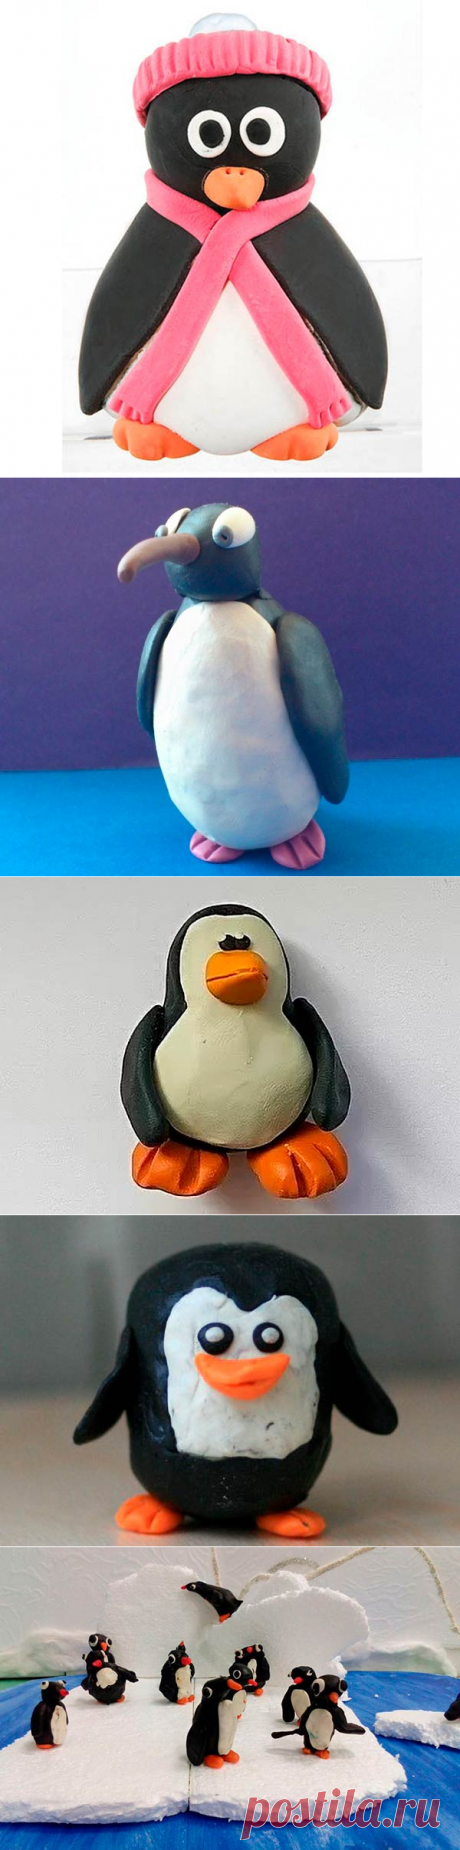 Как слепить пингвина из пластилина для детей: лепим по шагам пингвина на льдине, из шишек и воздушного пластилина своими руками, видео как сделать в фигурку из пластилина - пингвины из мультика мадагаскар на картоне